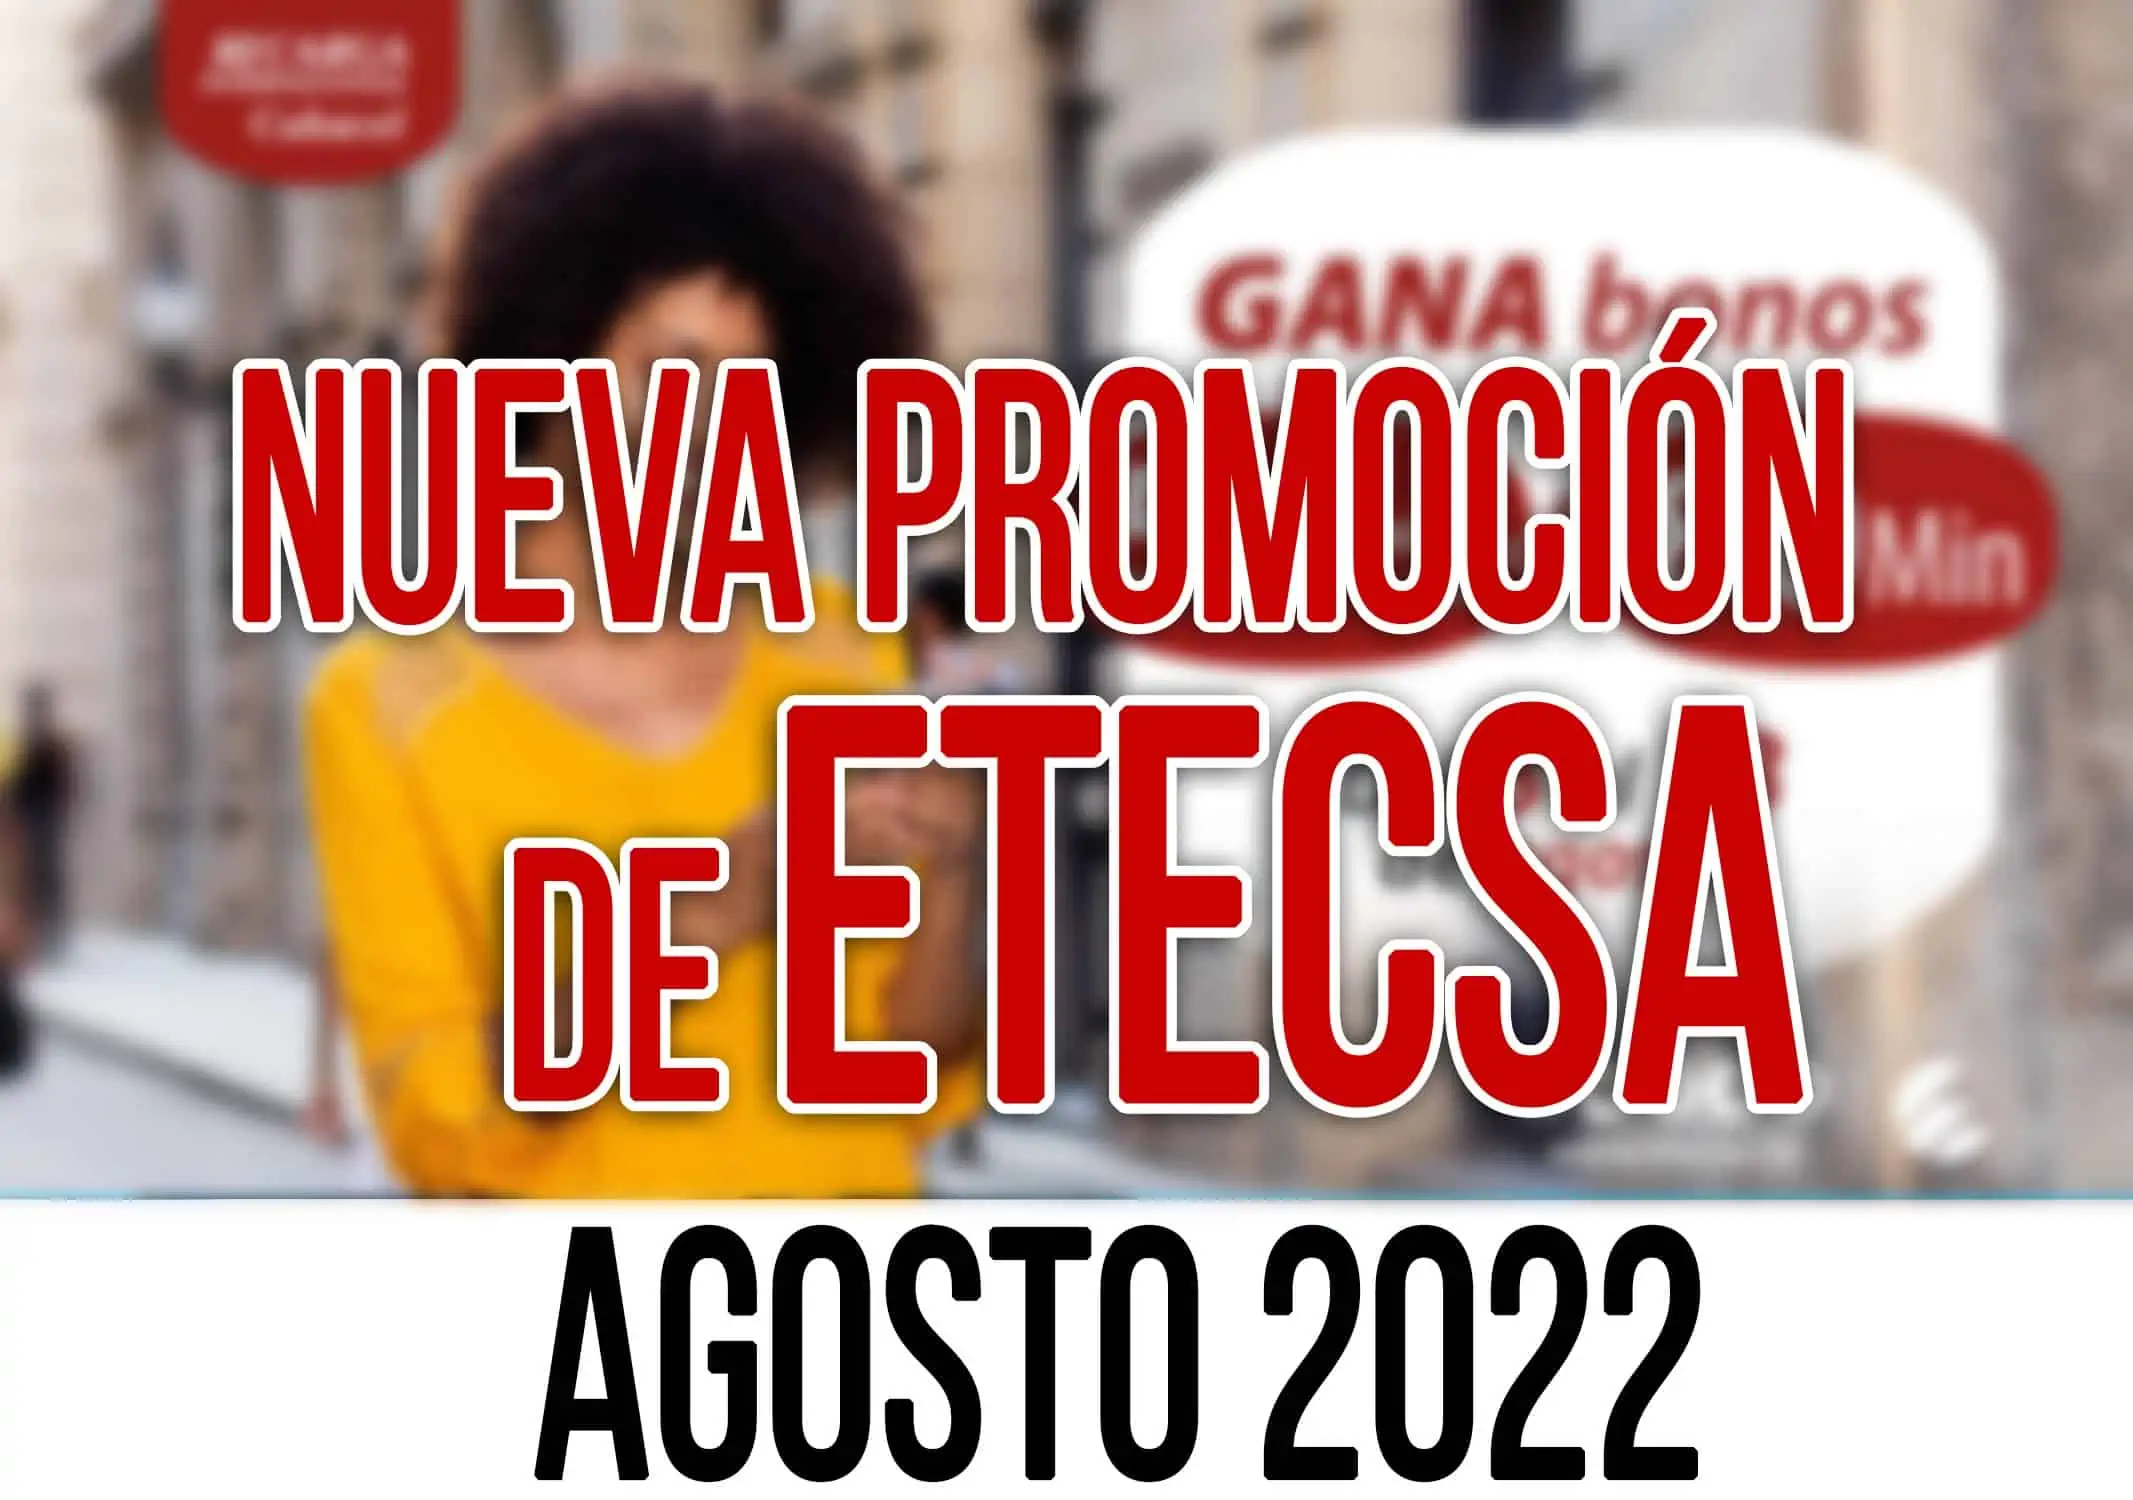 Oferta de Recarga Internacional de ETECSA para Agosto 2022